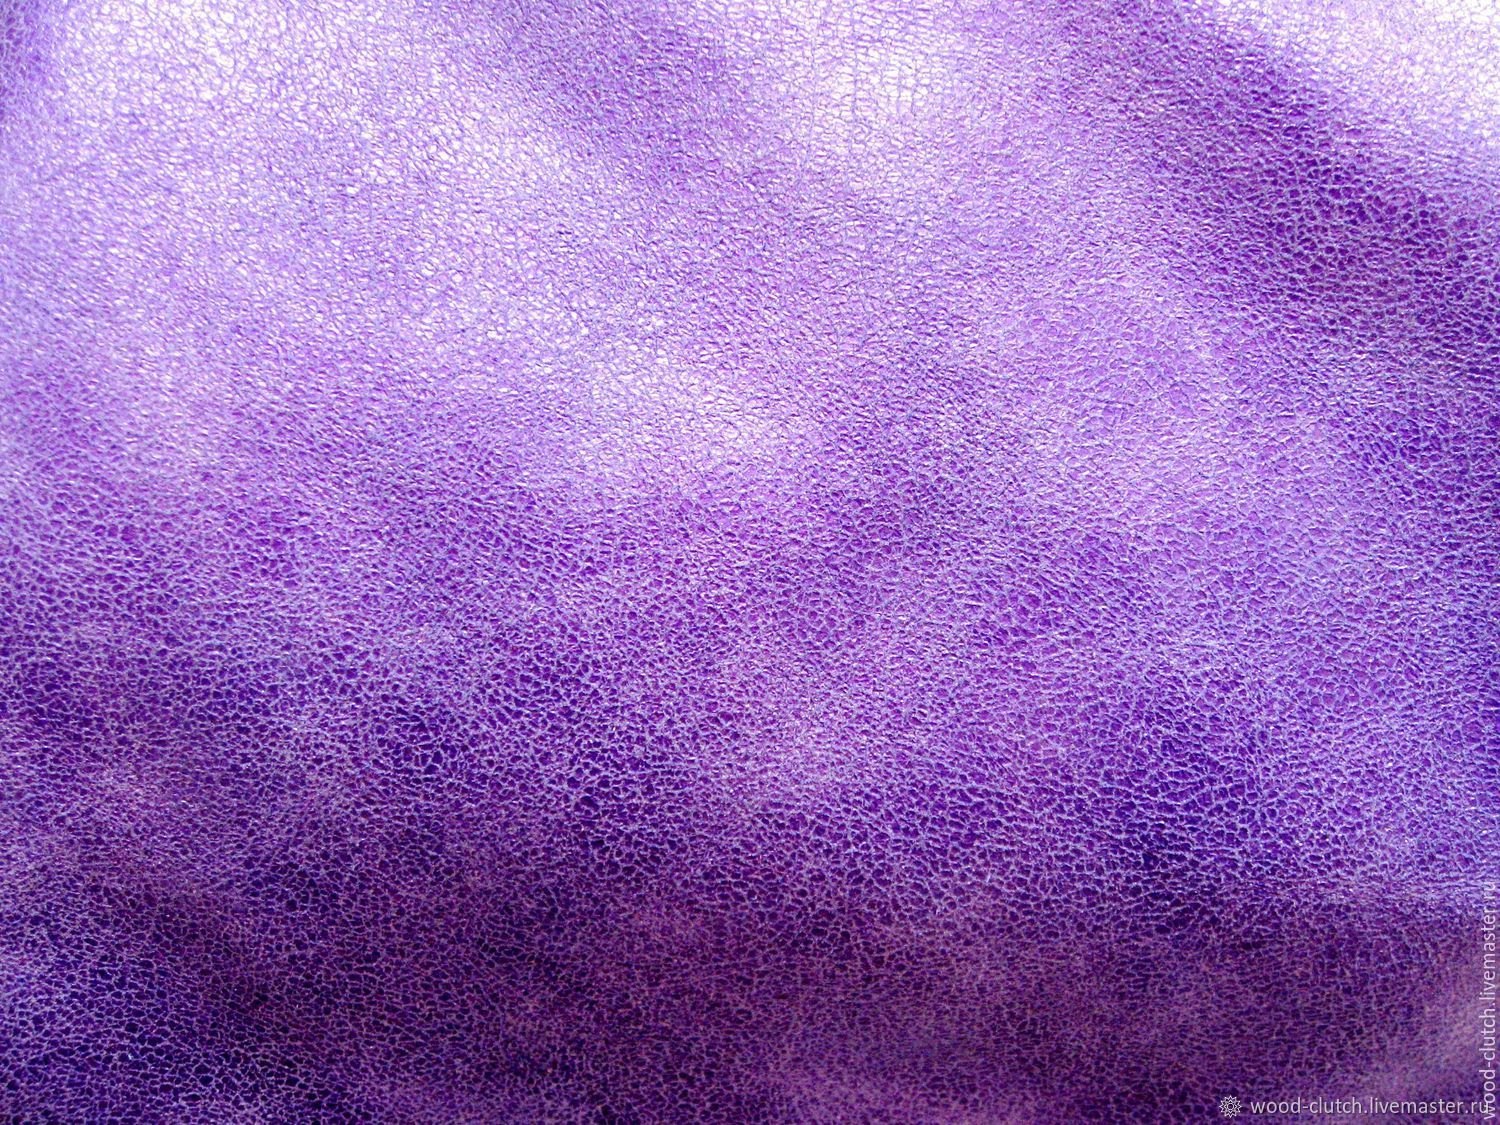 Перламутровый фиолетовый. Фиолетовый перламутр. Фиолетовая кожа. Перламутровый сиреневый. Фиолетовая кожа текстура.